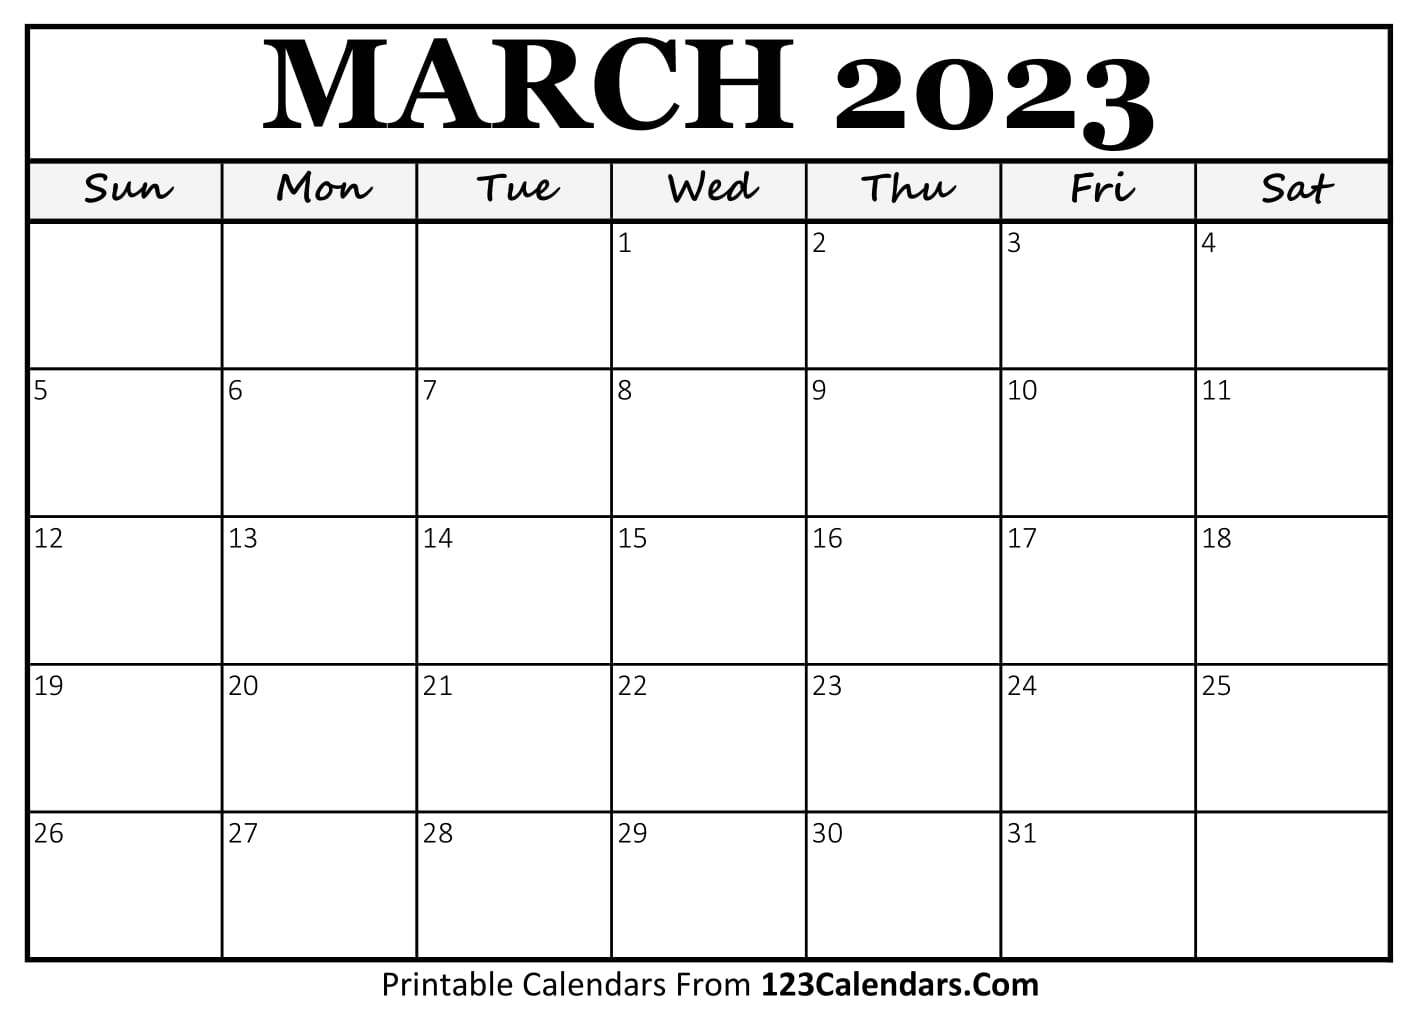 march-2023-calendar-123calendars-get-calender-2023-update